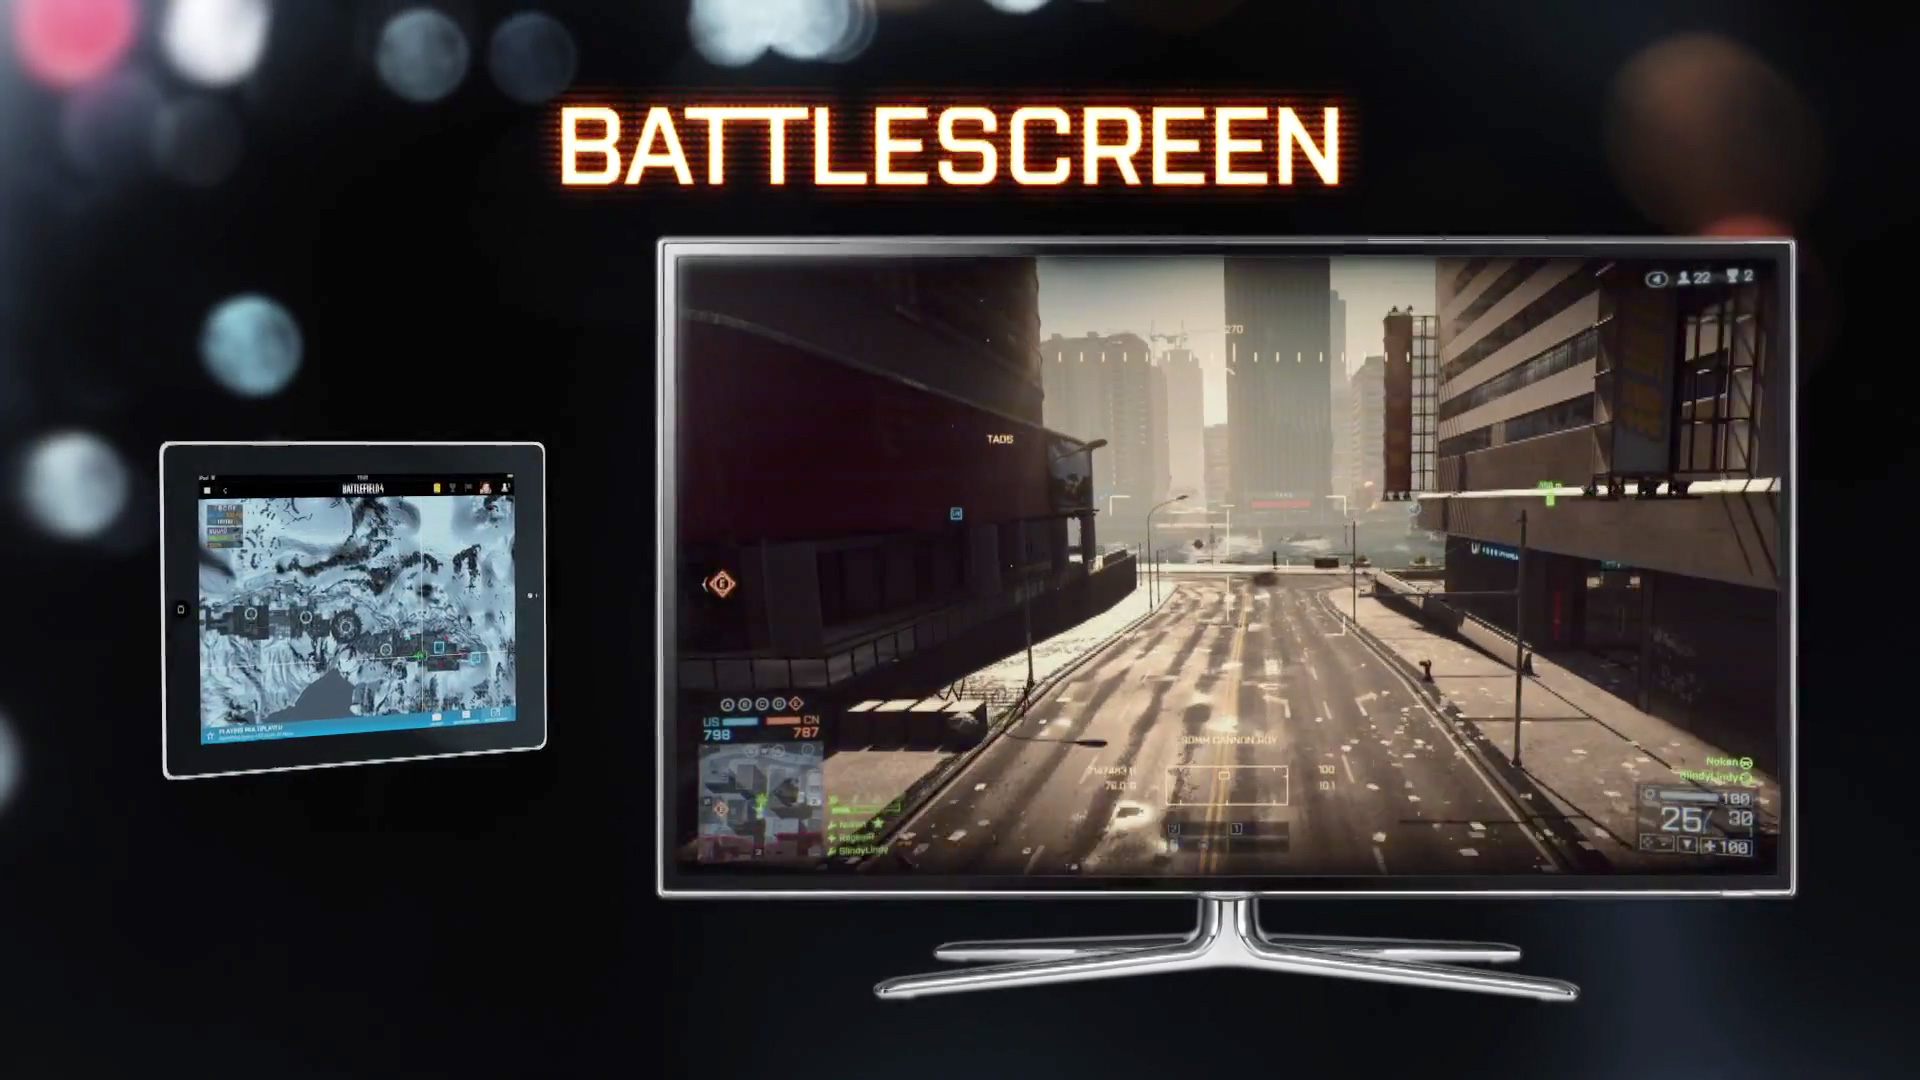 Battlefield 4 - Battlescreen